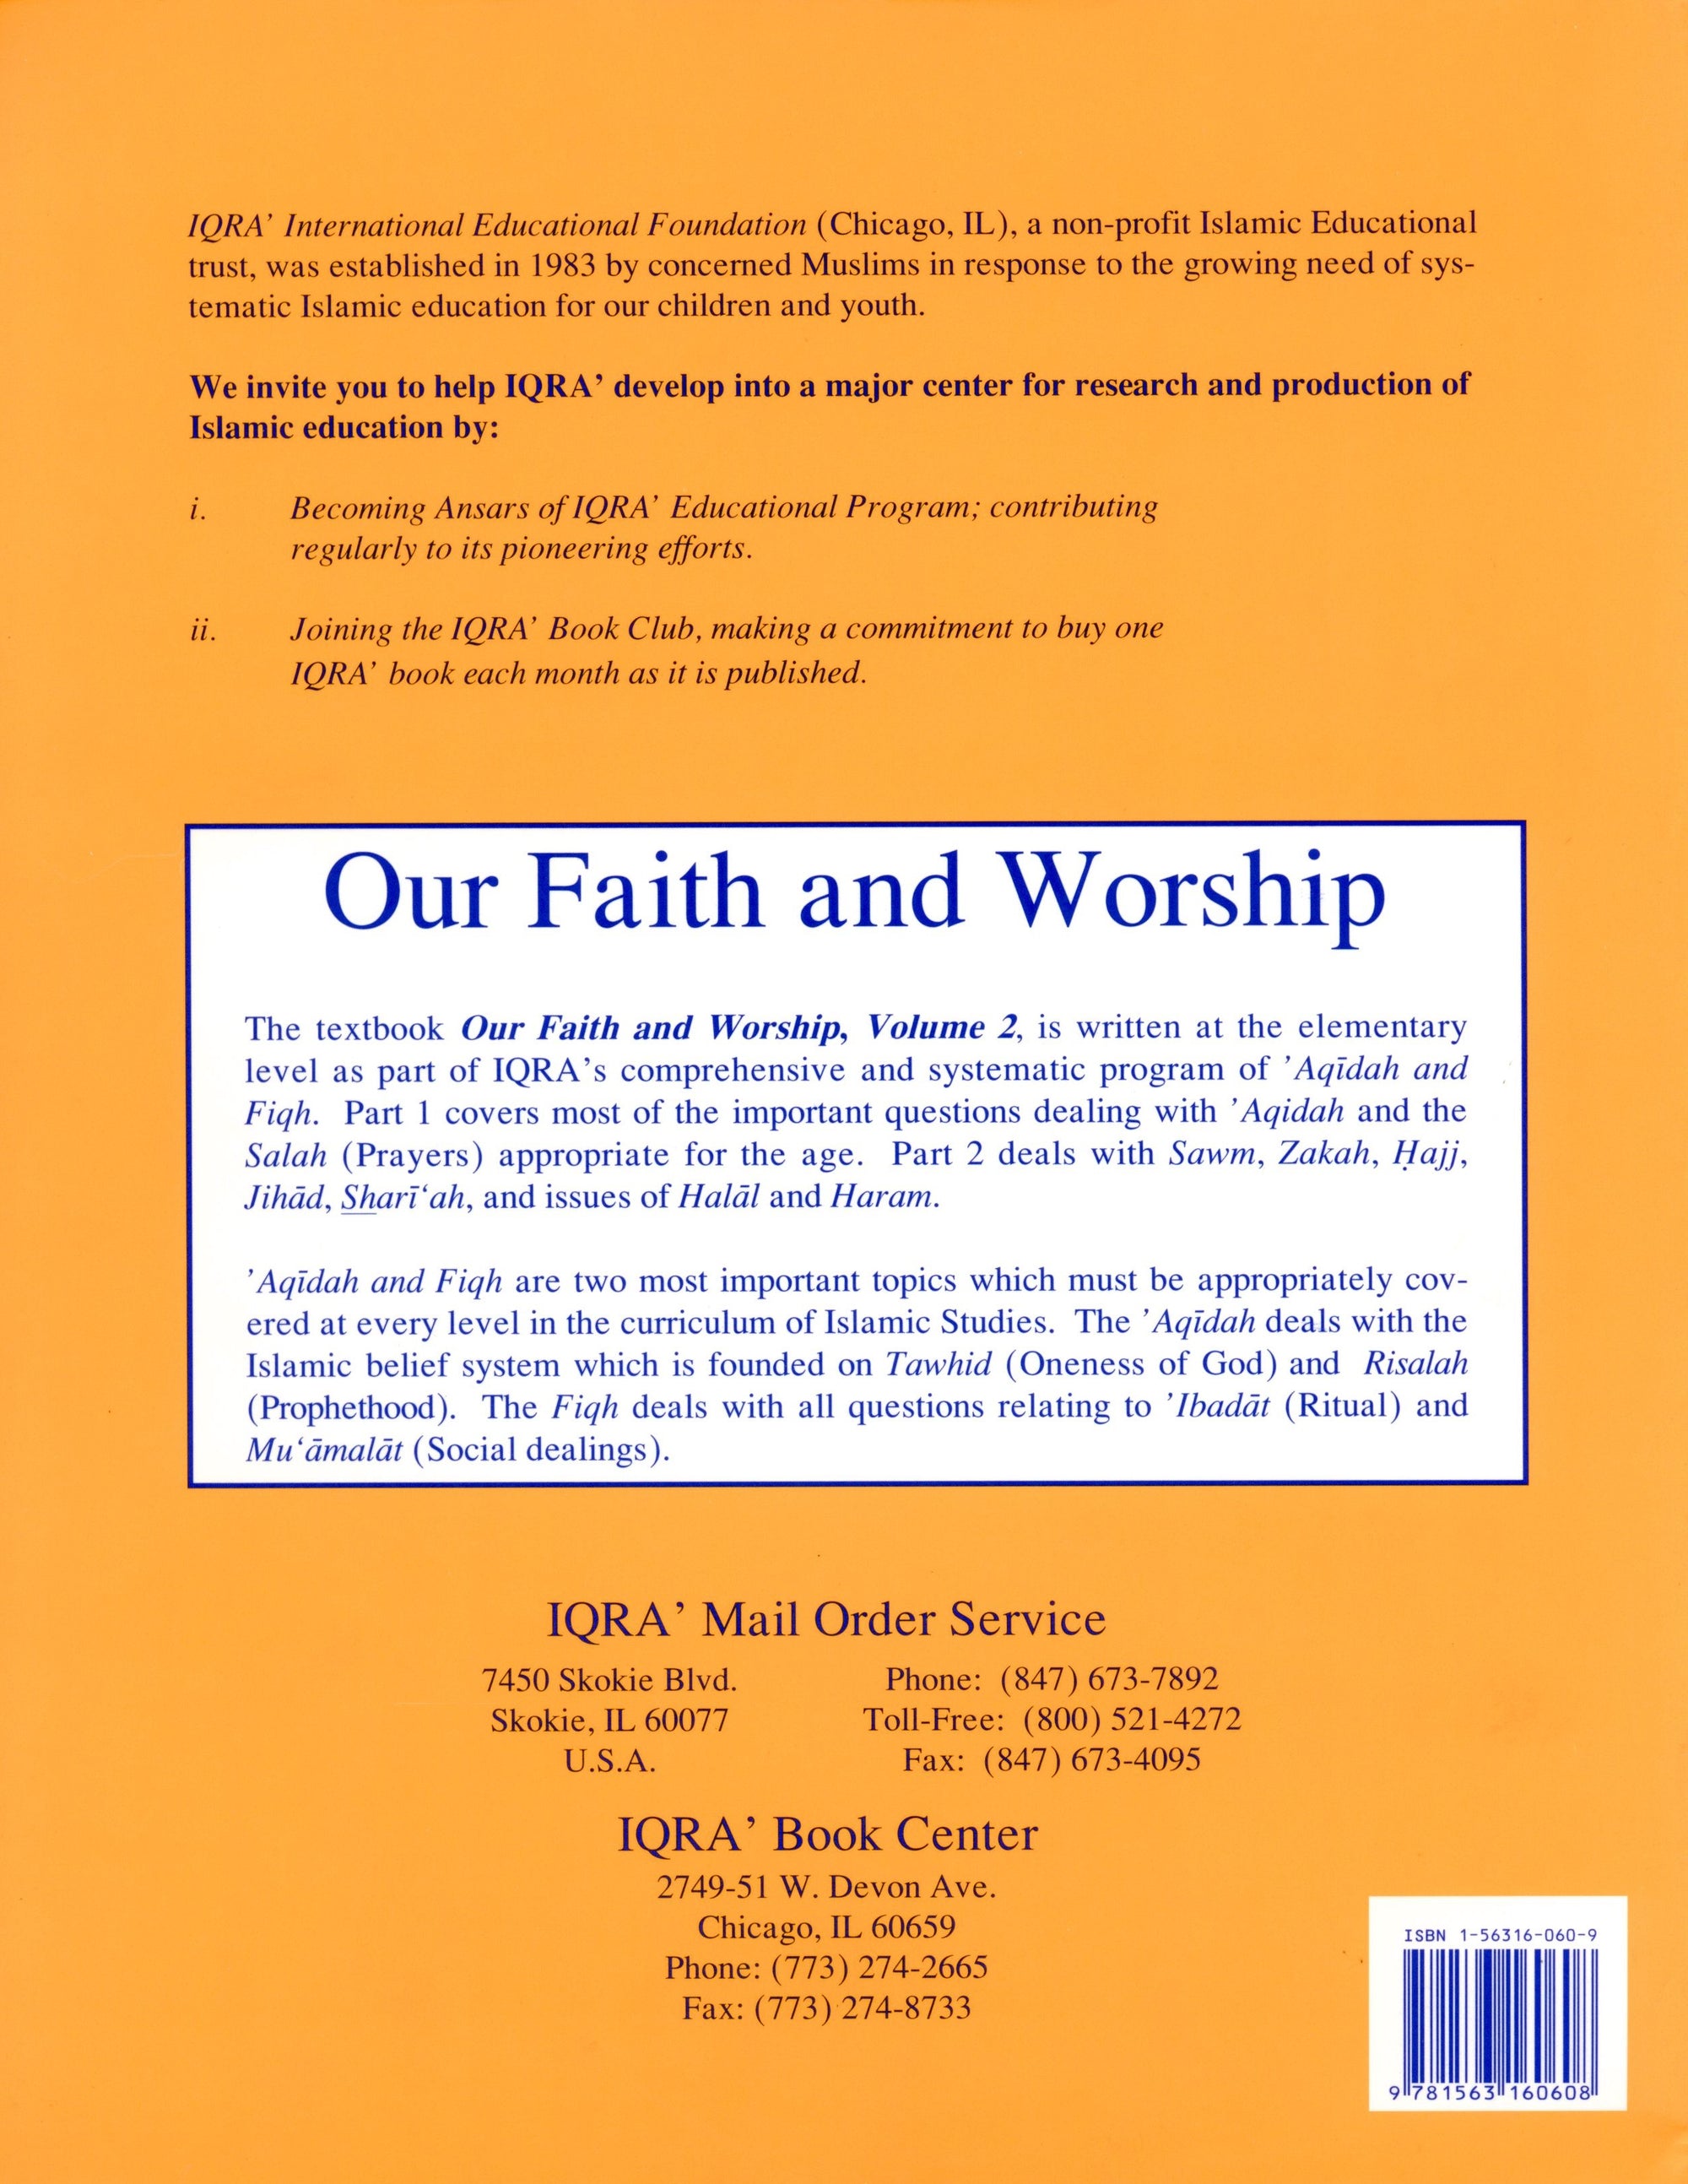 Our Faith and Worship Textbook Volume 2